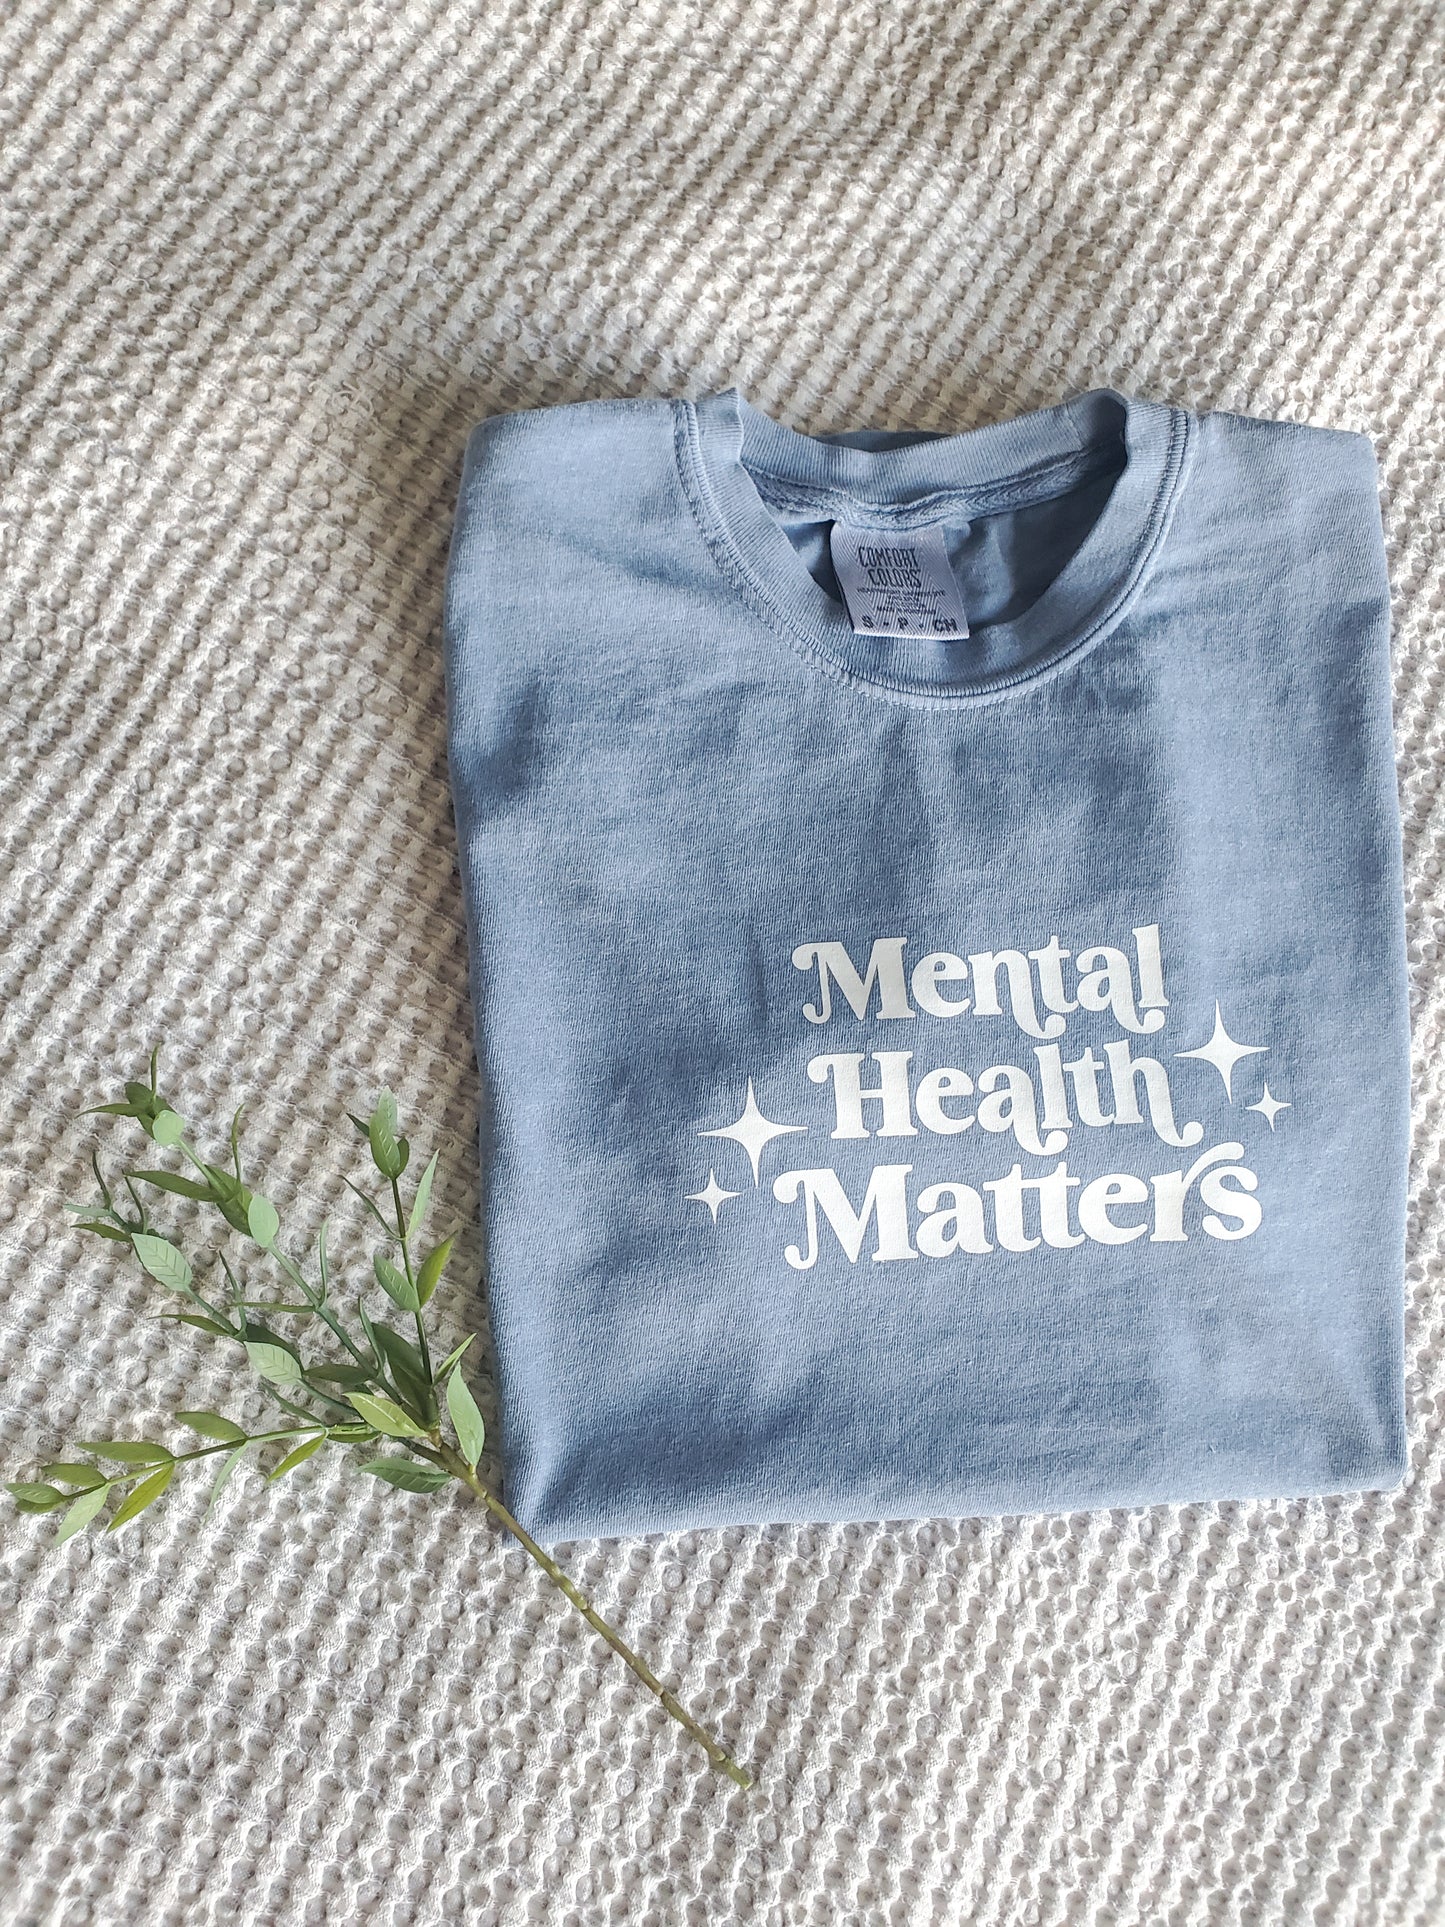 'Mental Health Matters' tshirt